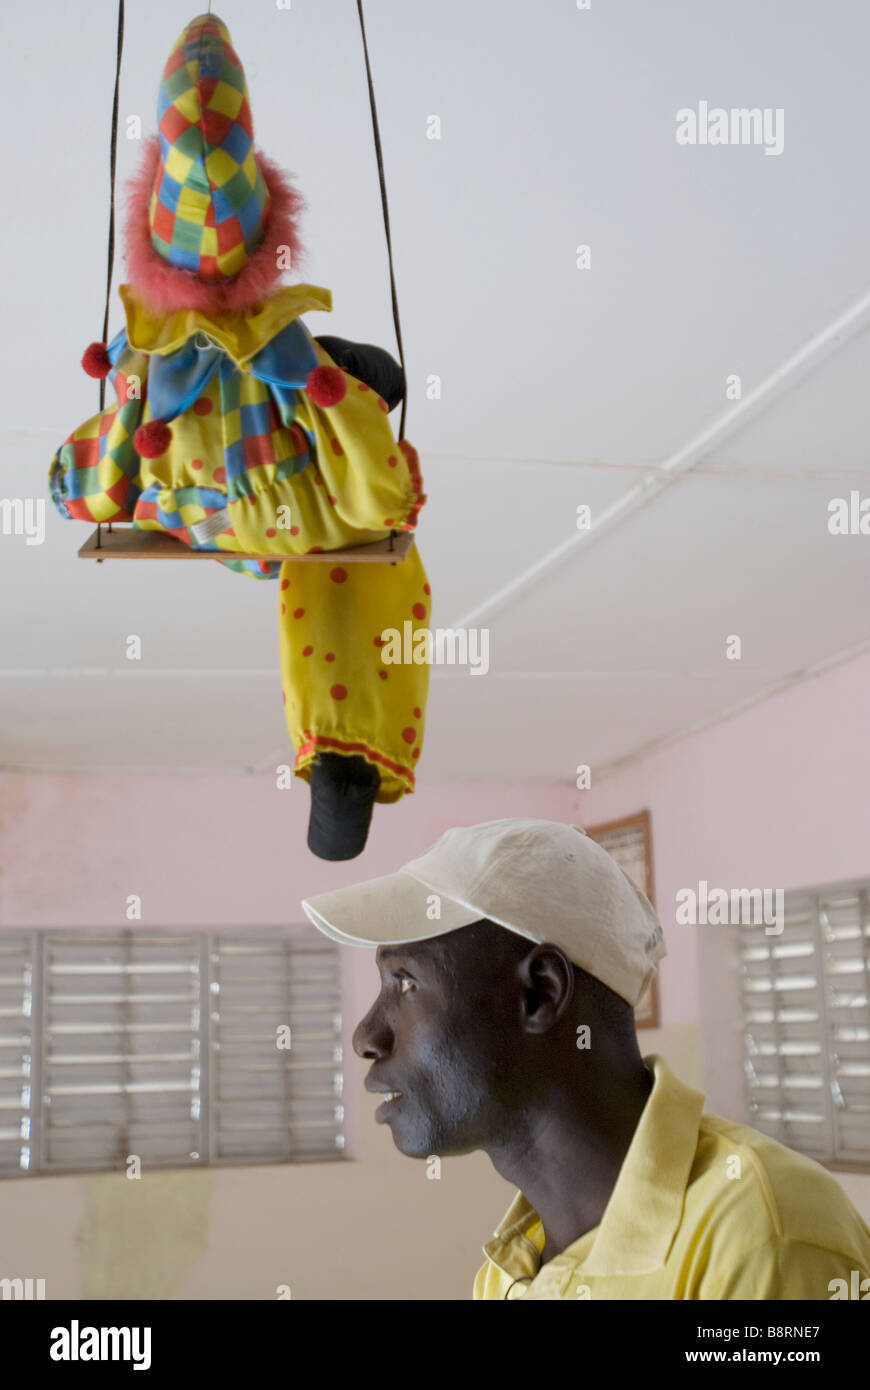 Profil d'un homme médecine africaine avec un enfant sur une balançoire clown jouet au-dessus de sa tête Banque D'Images